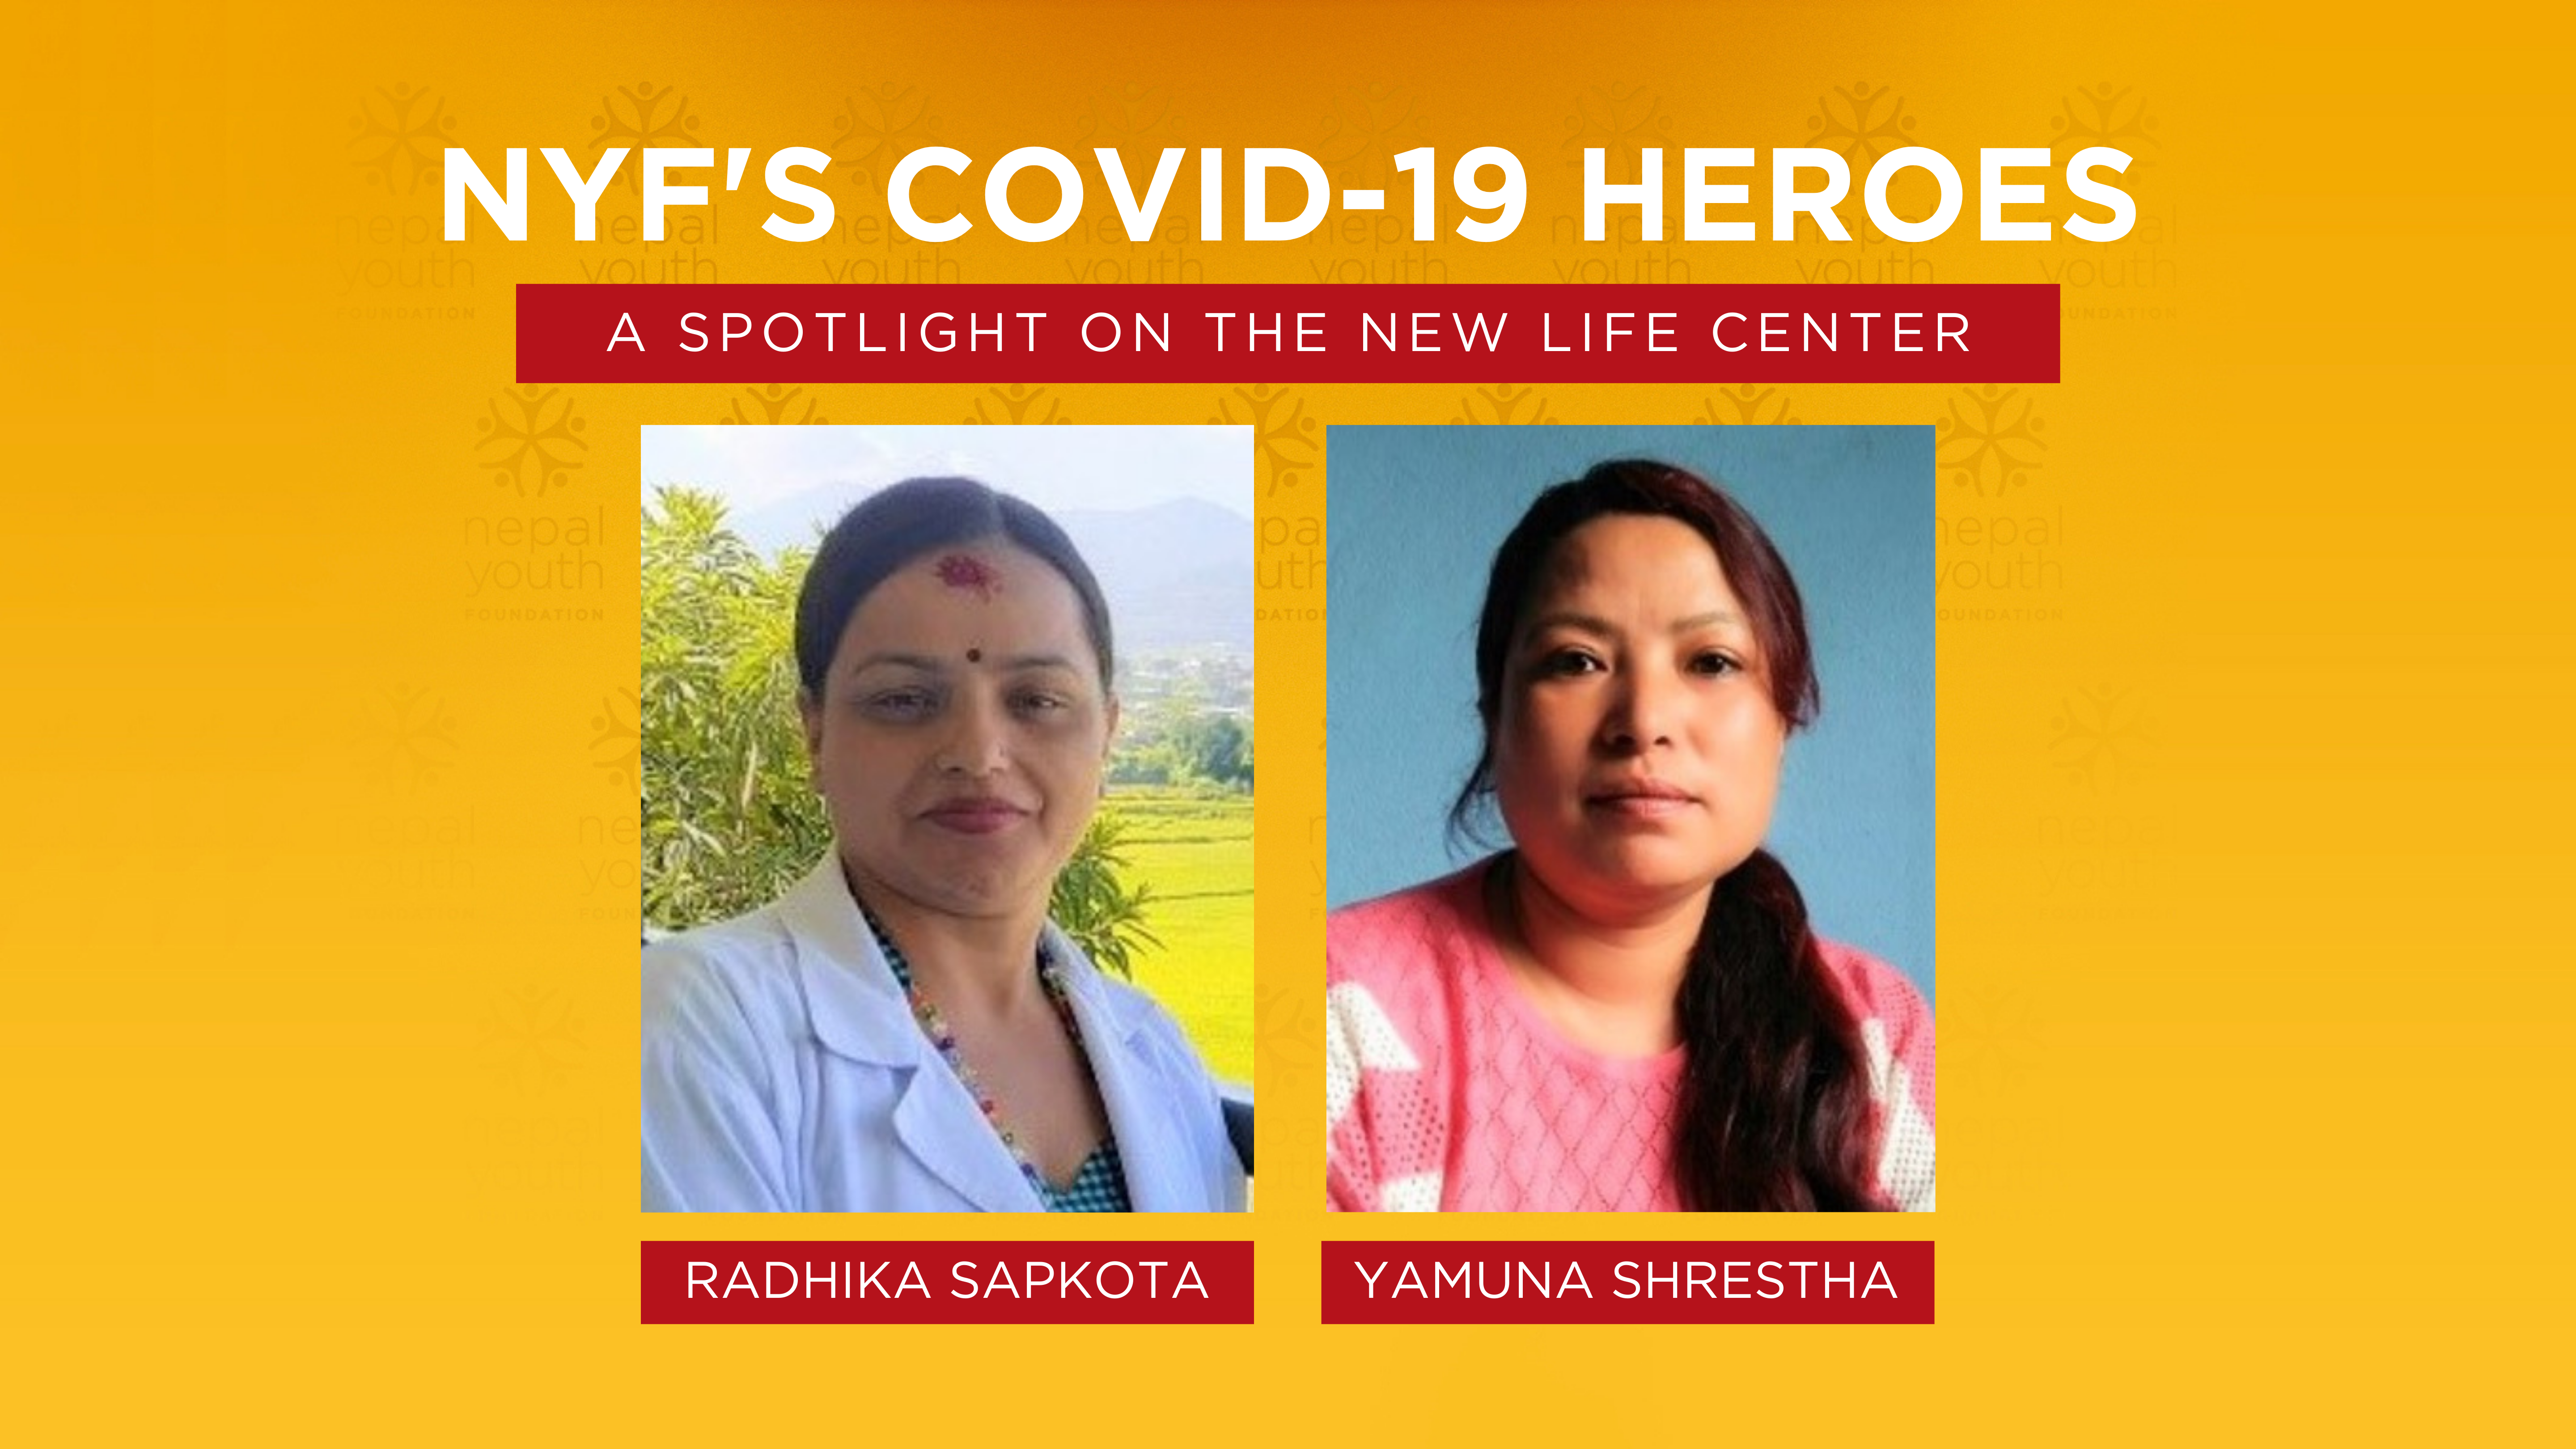 New Life Center Nurses in Nepal, NYF’s Covid-19 Heroes